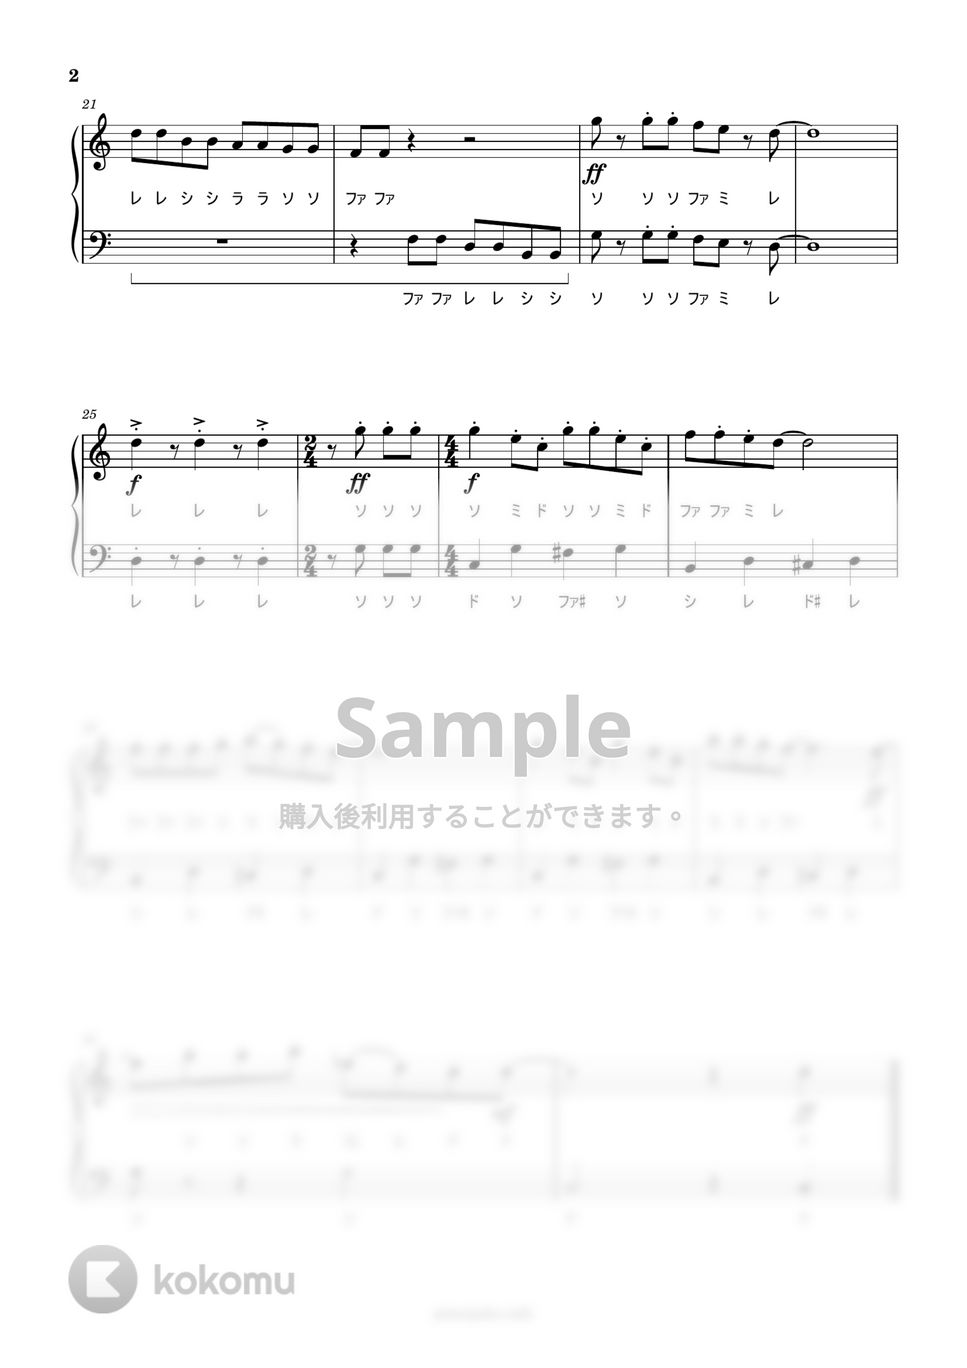 久石譲 - ねこバス (ドレミ付き簡単楽譜) by ピアノ塾